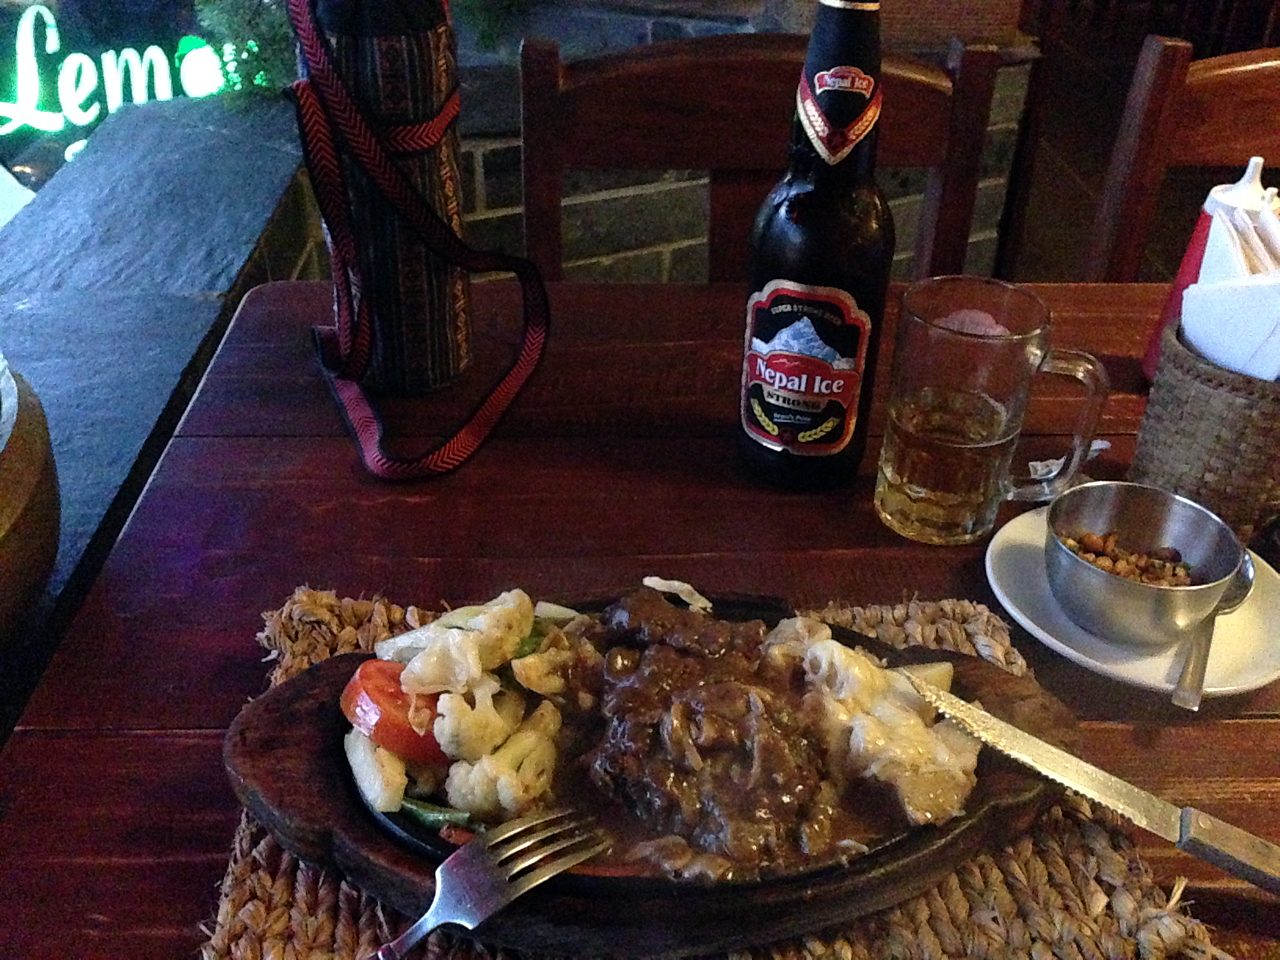  네팔 포카라의 스테이크는 밤에 먹어도 옳다. 맥주와 함께라면 더욱 옳다.